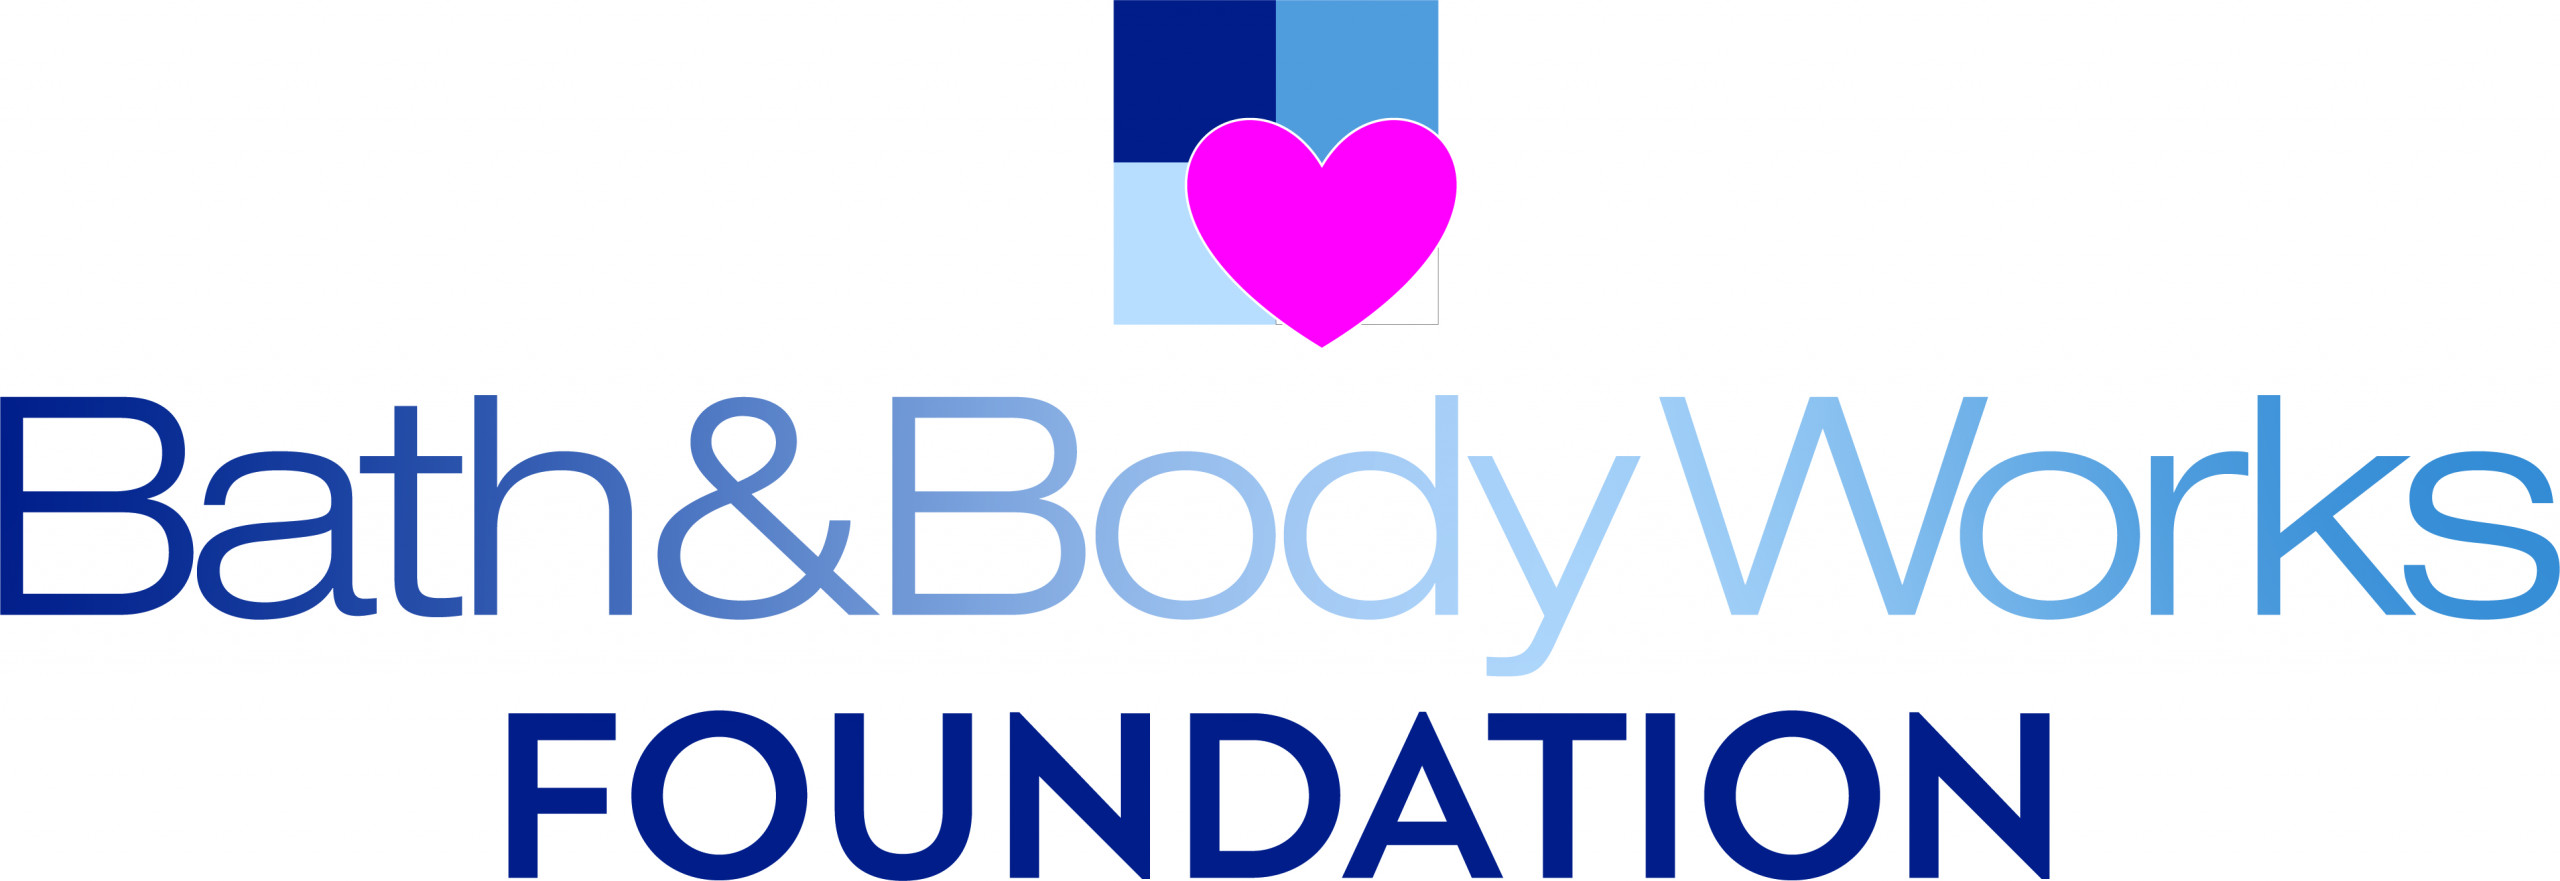 Bath and Body Works Foundation logo